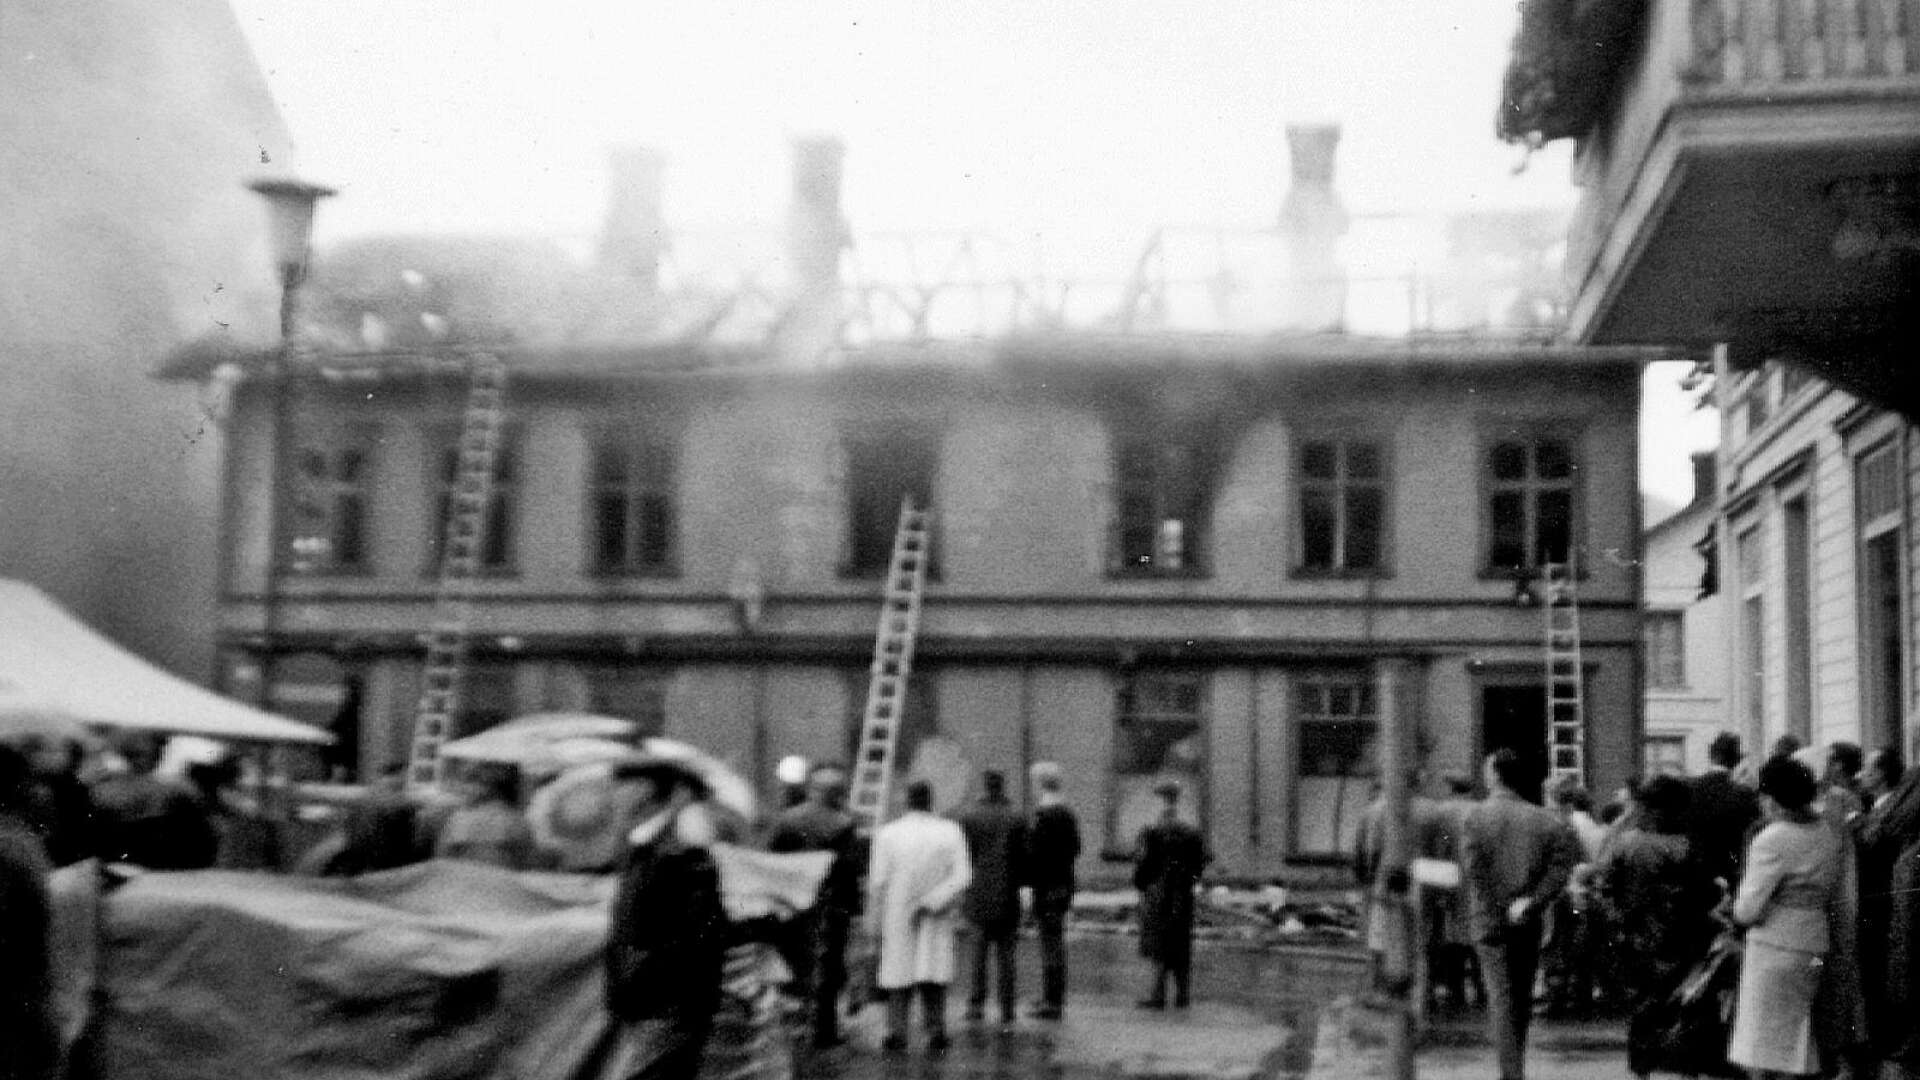 Samrealskolans elever var lediga för att på TV kunna följa Hammarskjölds begravning. Branden vid torget lockade mer. Kameran fick följa med, men skärpan kunde ha blivit bättre. 